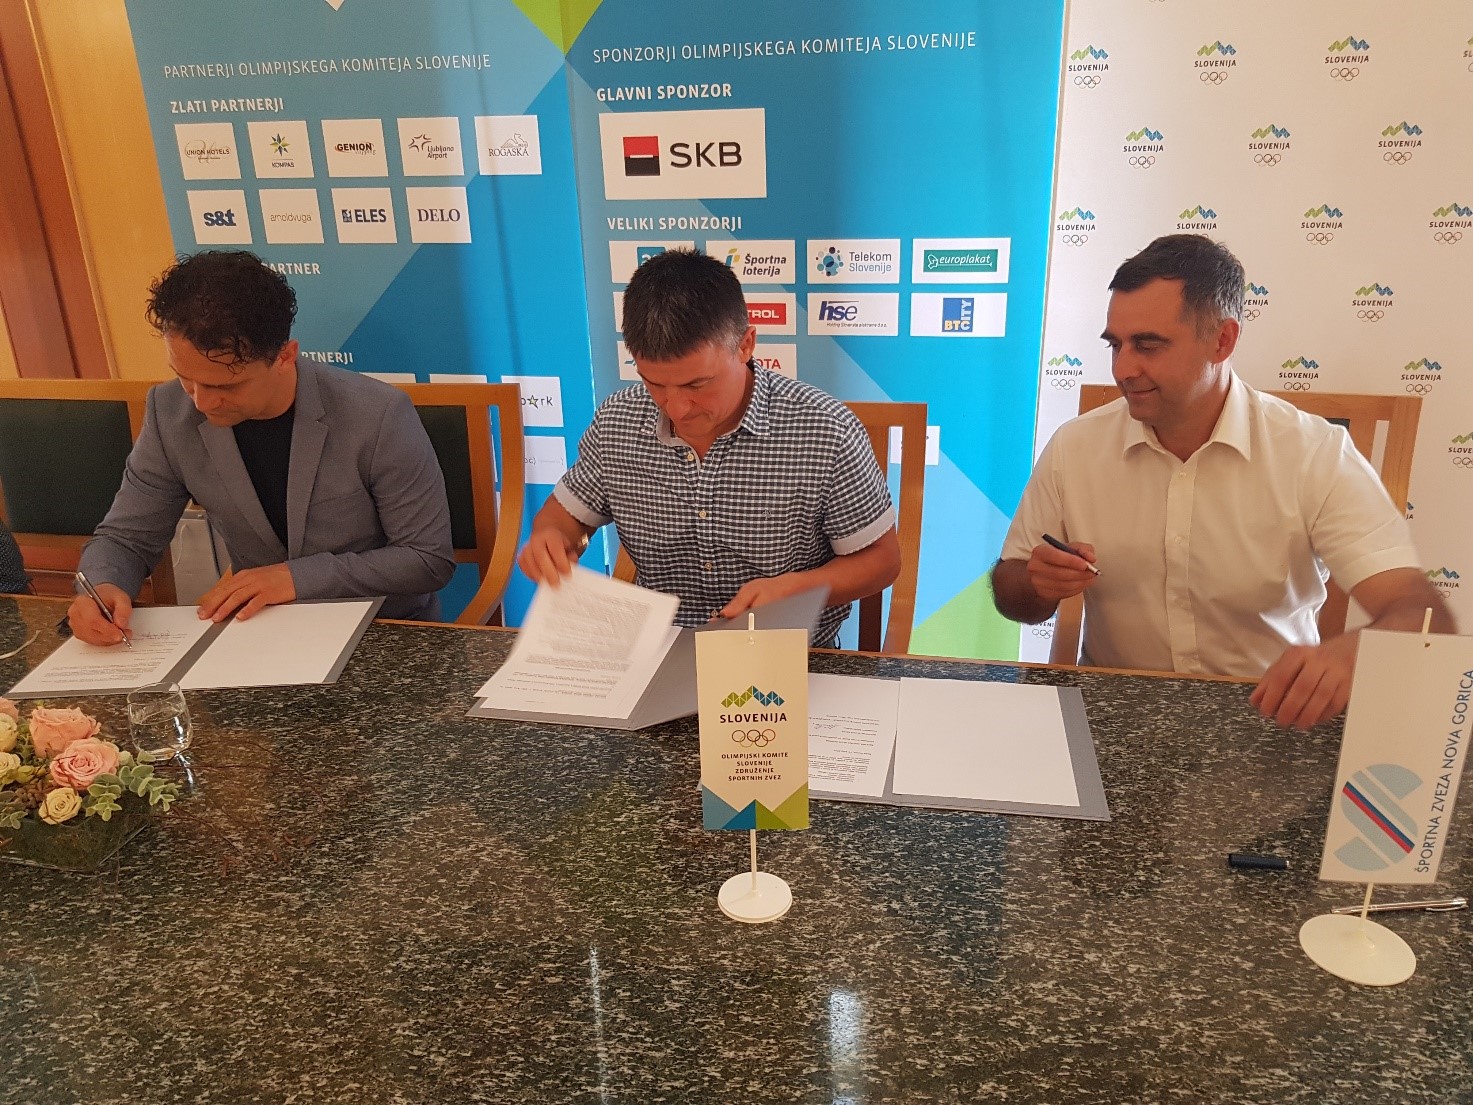 Podpis pogodbe med OKS ZŠZ in Športno zvezo Nova Gorica in dogovora o sodelovanju z Mestno občino Nova Gorica